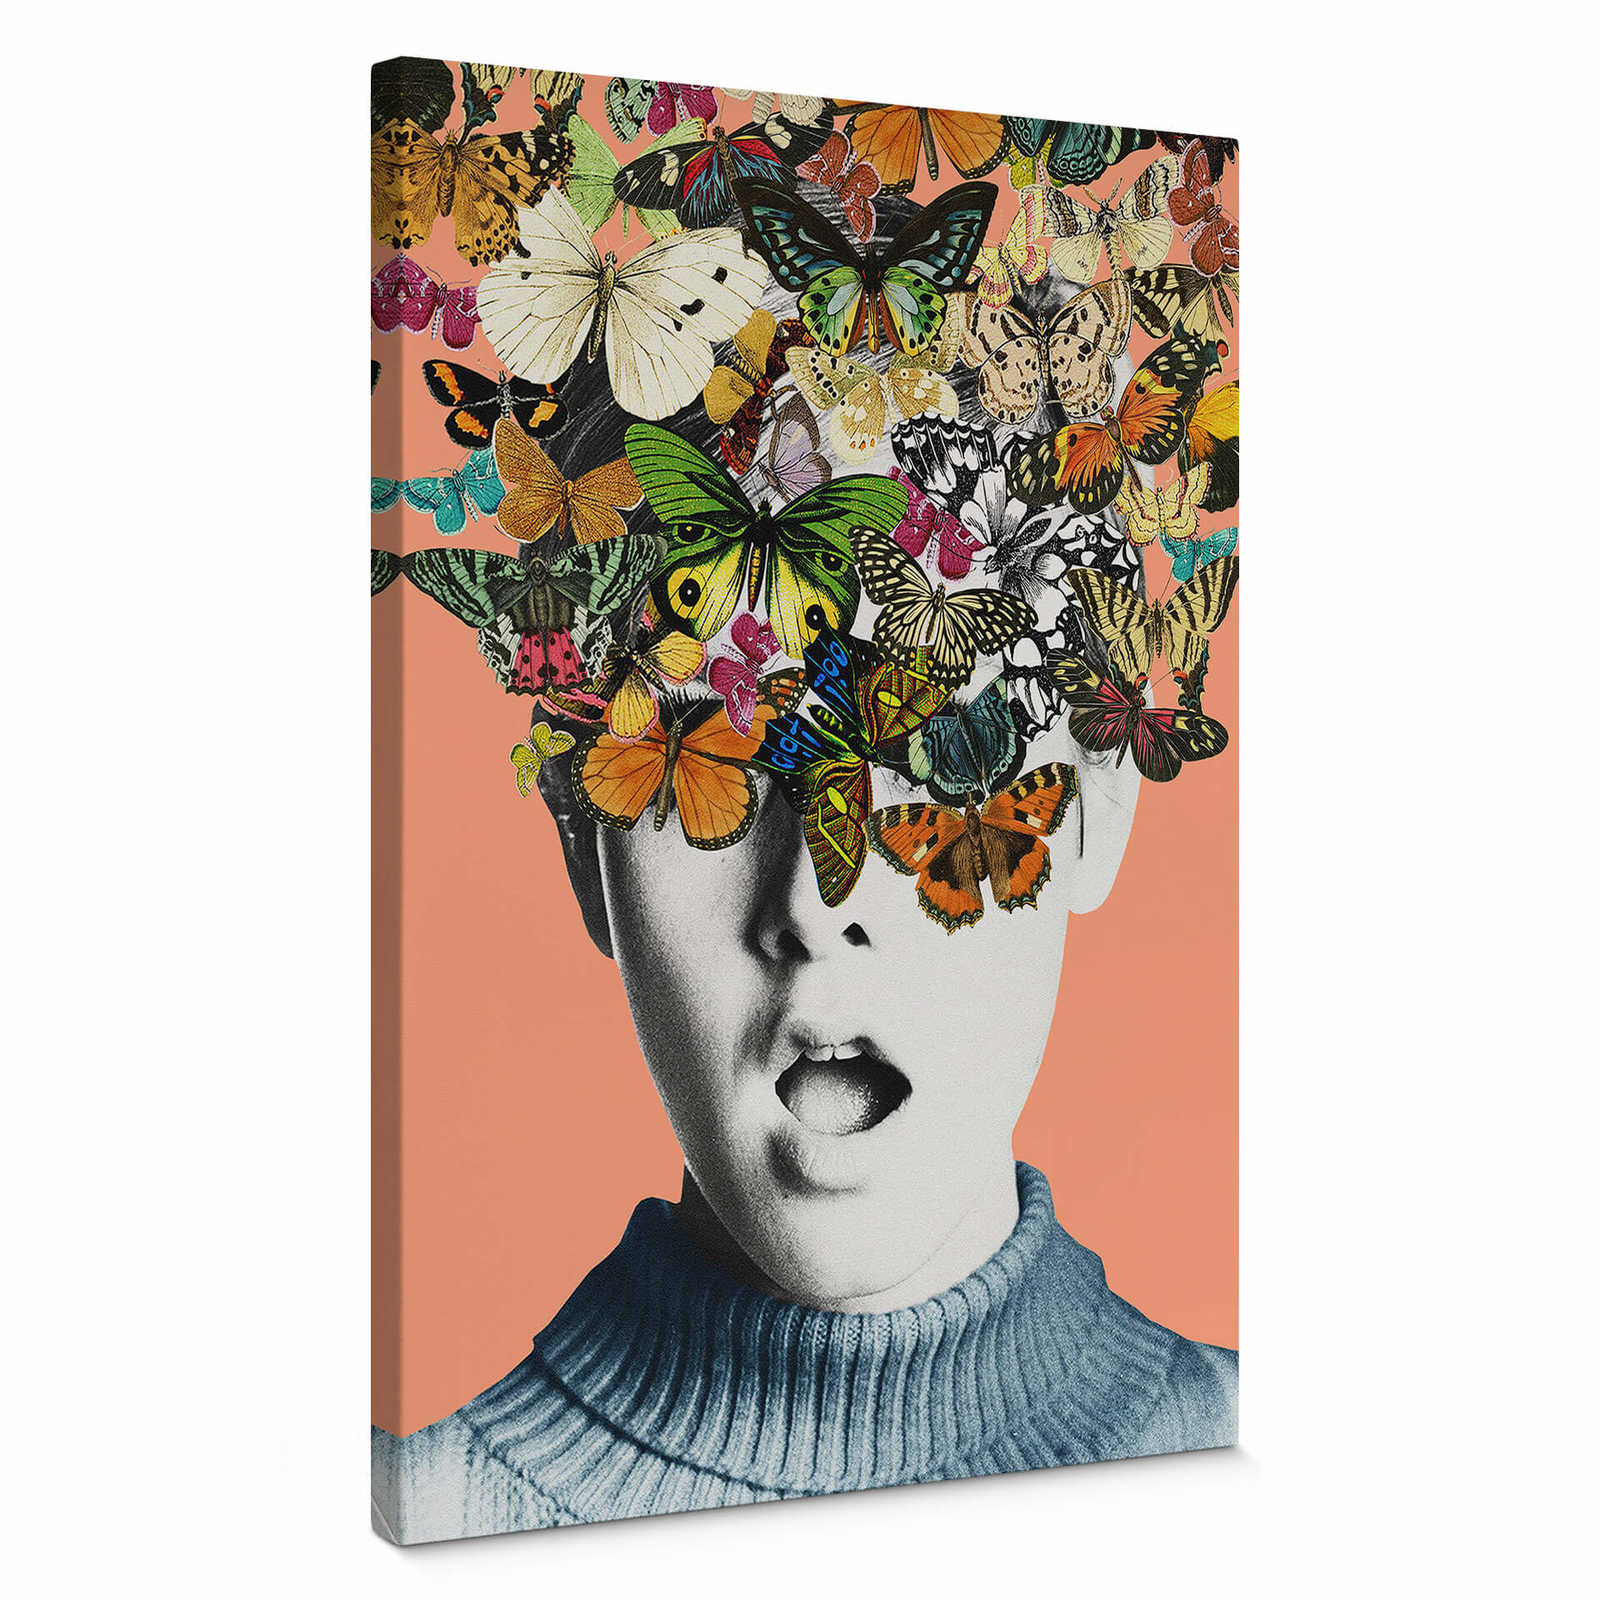         Feldmann Leinwandbild abstrakt, Mensch & Blumen – 0,50 m x 0,70 m
    